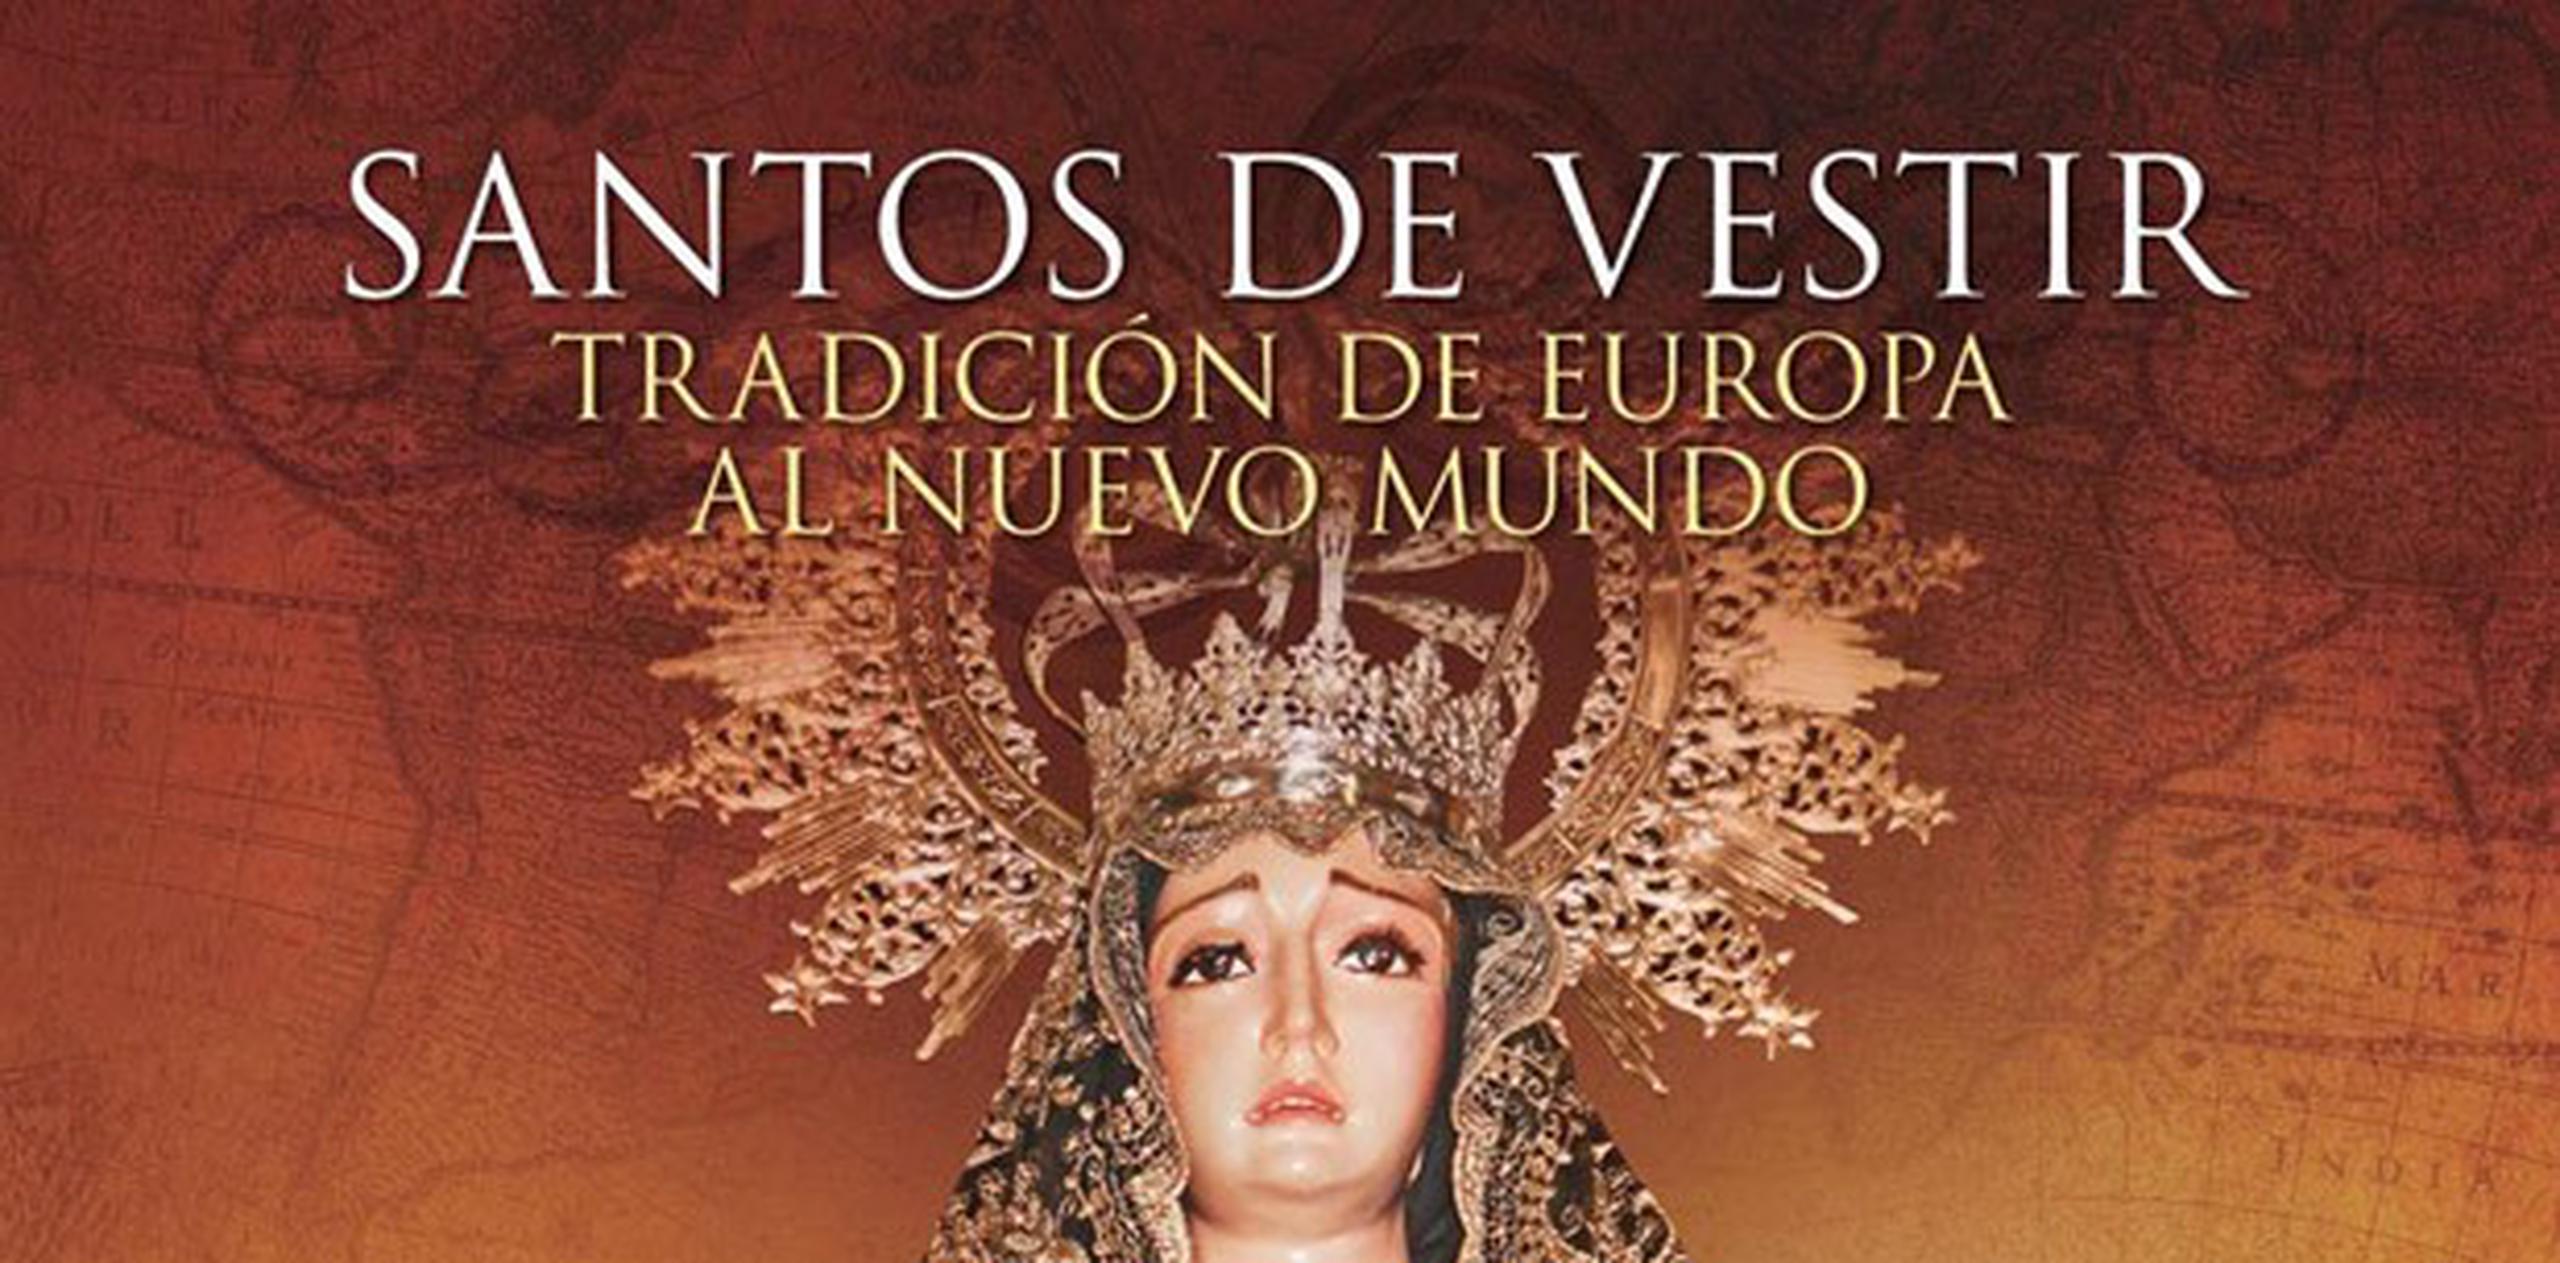 El Instituto de Cultura Puertorriqueña (ICP) anuncia la presentación del libro “Santos de Vestir: tradición de Europa al Nuevo Mundo”, de Carmen Eloisa González, a celebrarse hoy. (Suministrada)